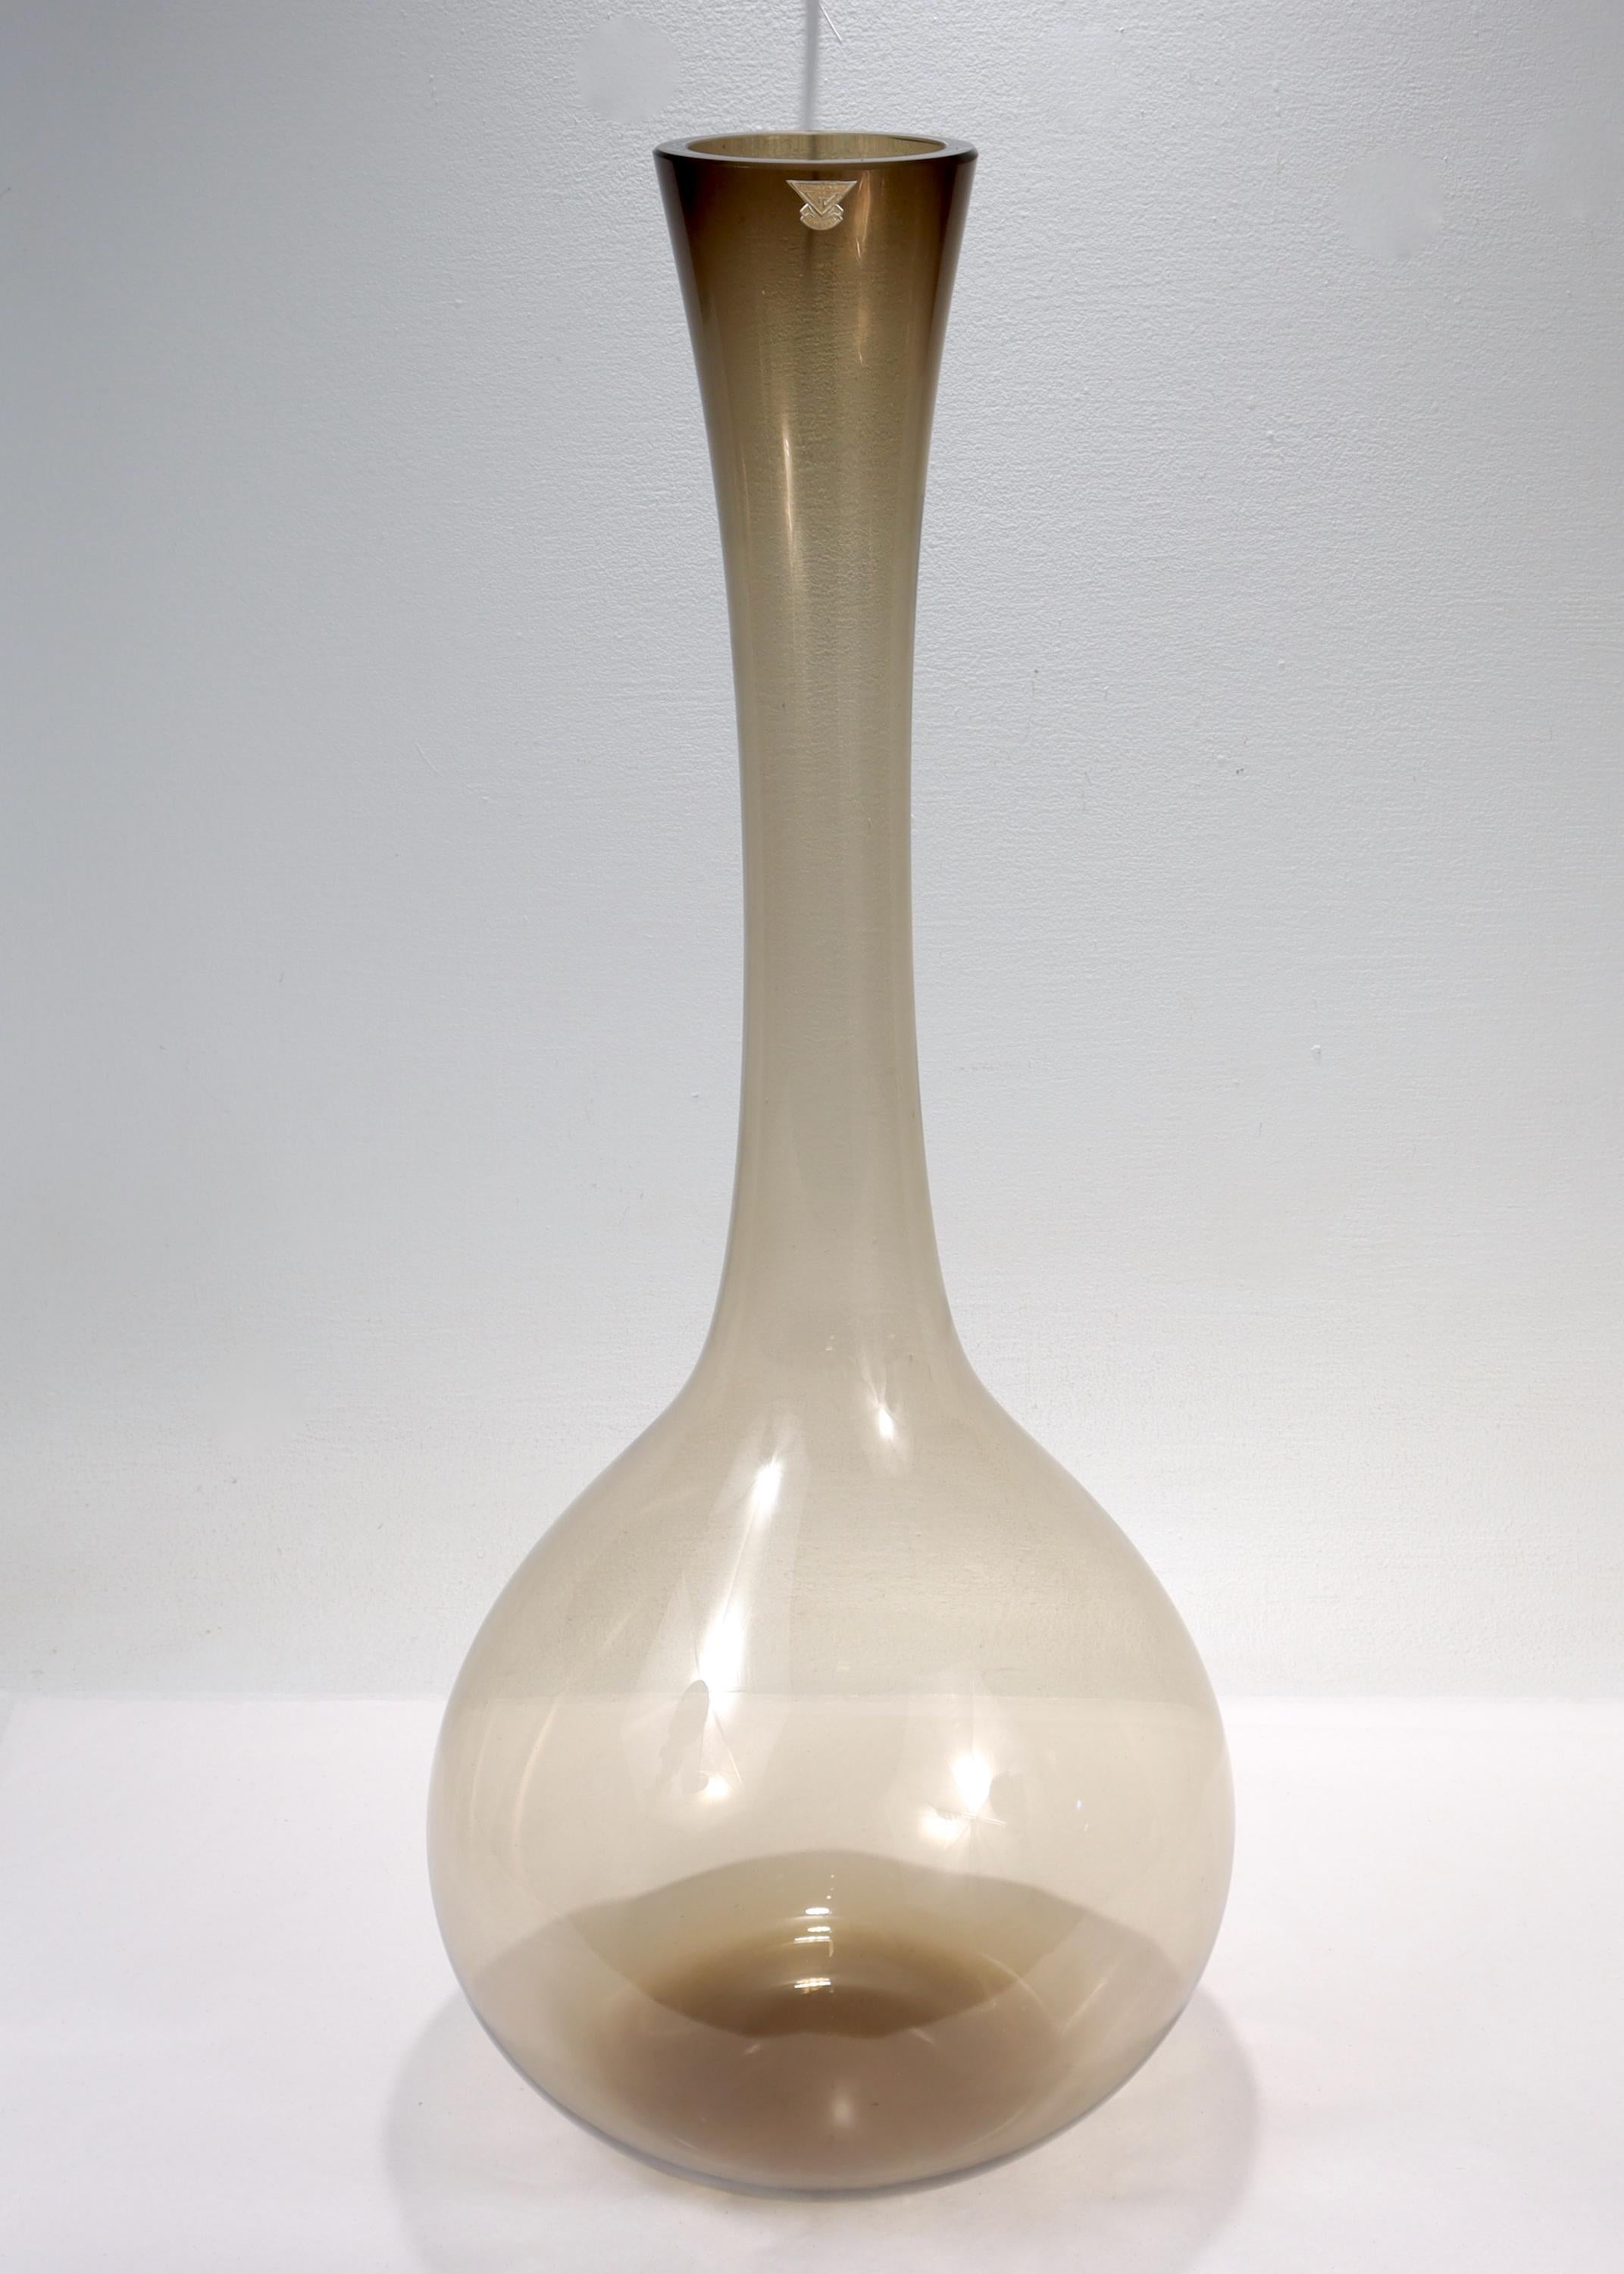 Eine sehr große Vase aus schwedischem Kunstglas aus der Jahrhundertmitte.

Von Gullaskruf.

Der Entwurf wird Arthur Carlsson Percy zugeschrieben.

Aus rauchgrauem Glas mit großer runder Basis und ausgestelltem schmalen Hals.

Einfach eine